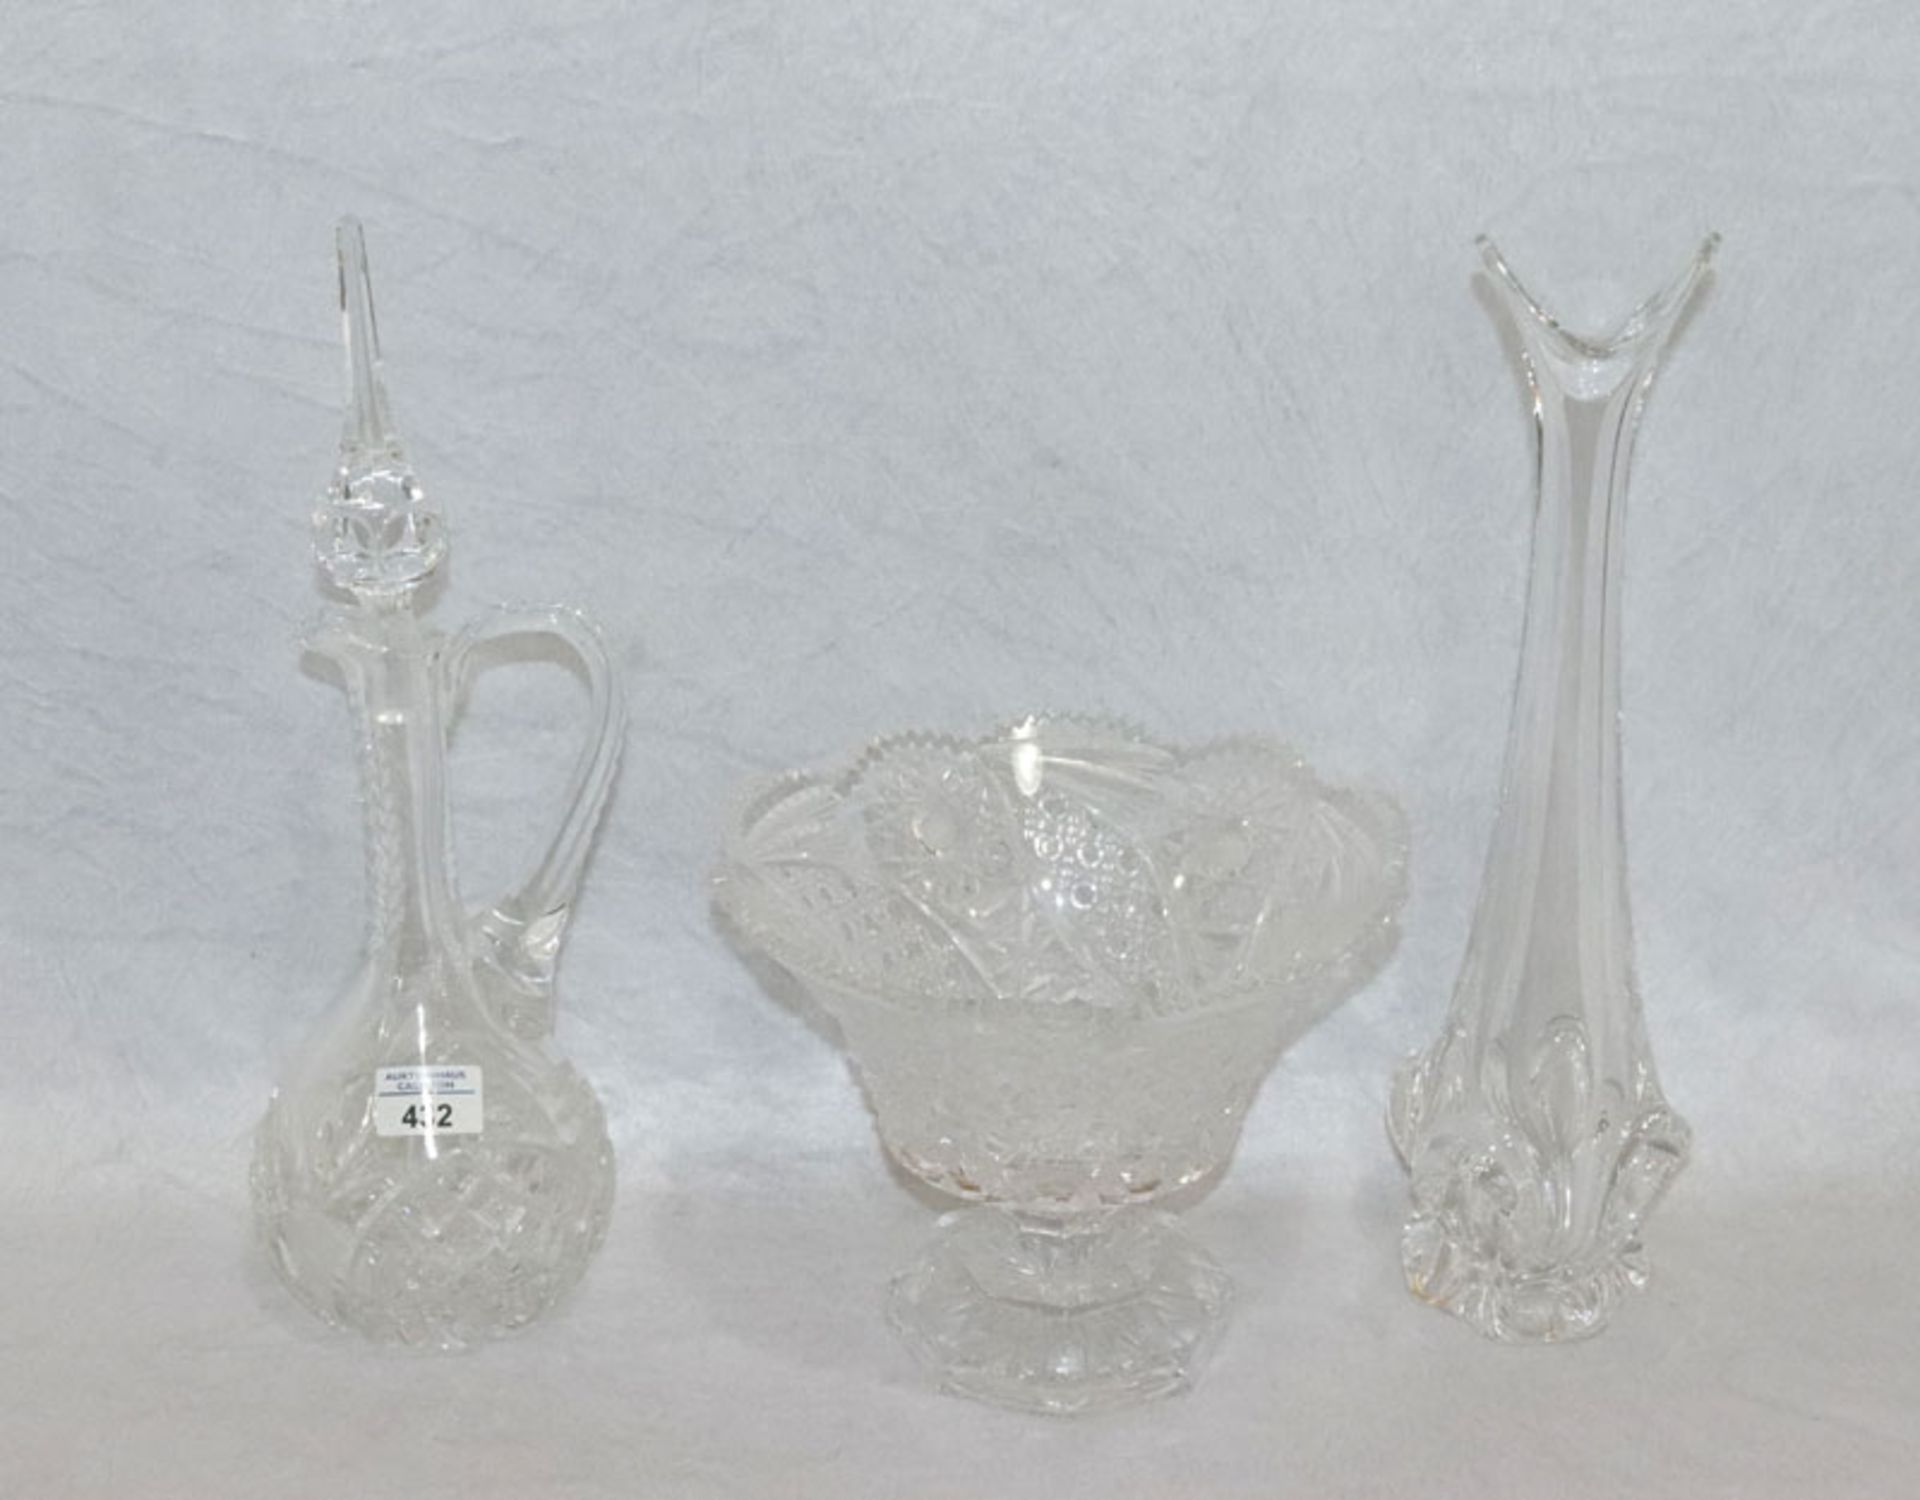 Kristallglas-Konvolut: Sevres France Blumenvase, H 41 cm, Henkelkaraffe, Stöpsel nicht passend, H 41